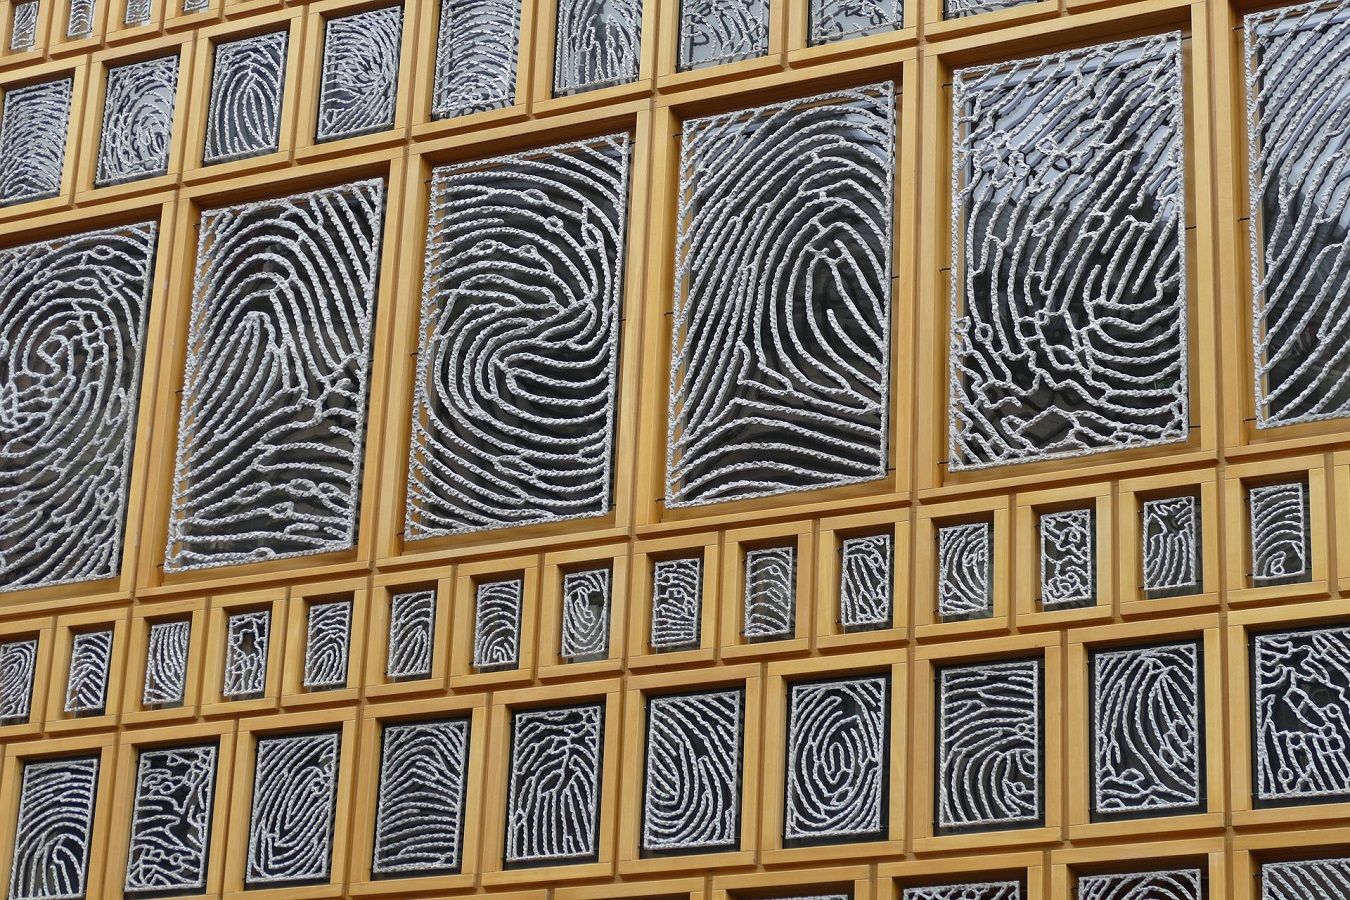 Fingerprints shown in windows